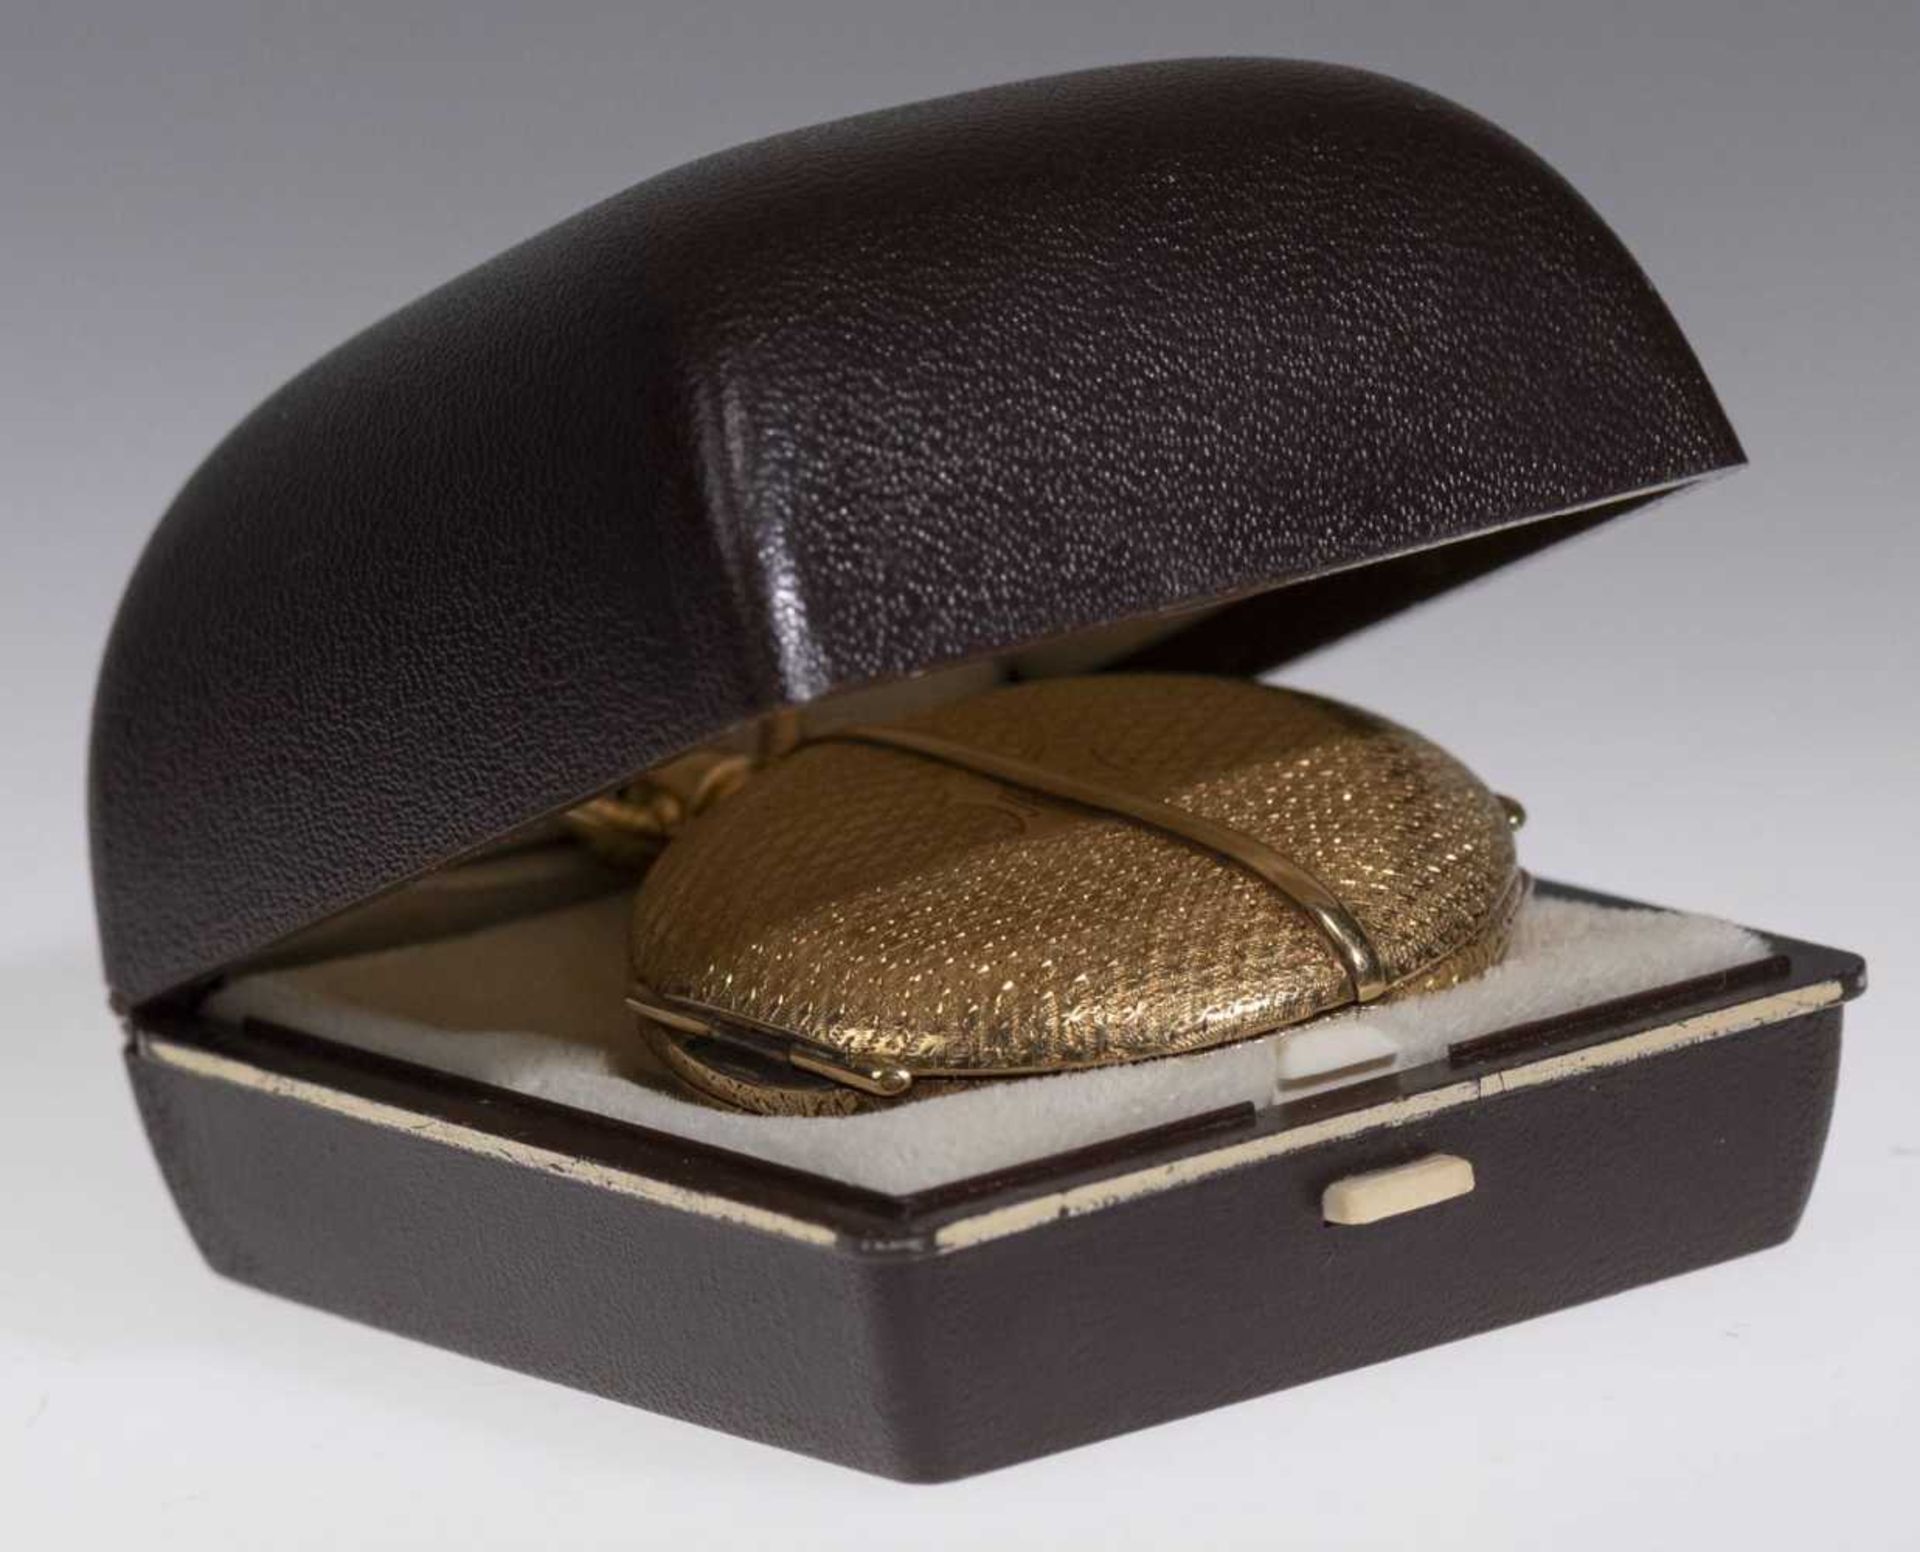 Savonette Taschenuhr. Ca. 36,5mm, 750er Gold, Handaufzug. Emailliertes Ziffernblatt mit goldenen Zei - Bild 6 aus 6